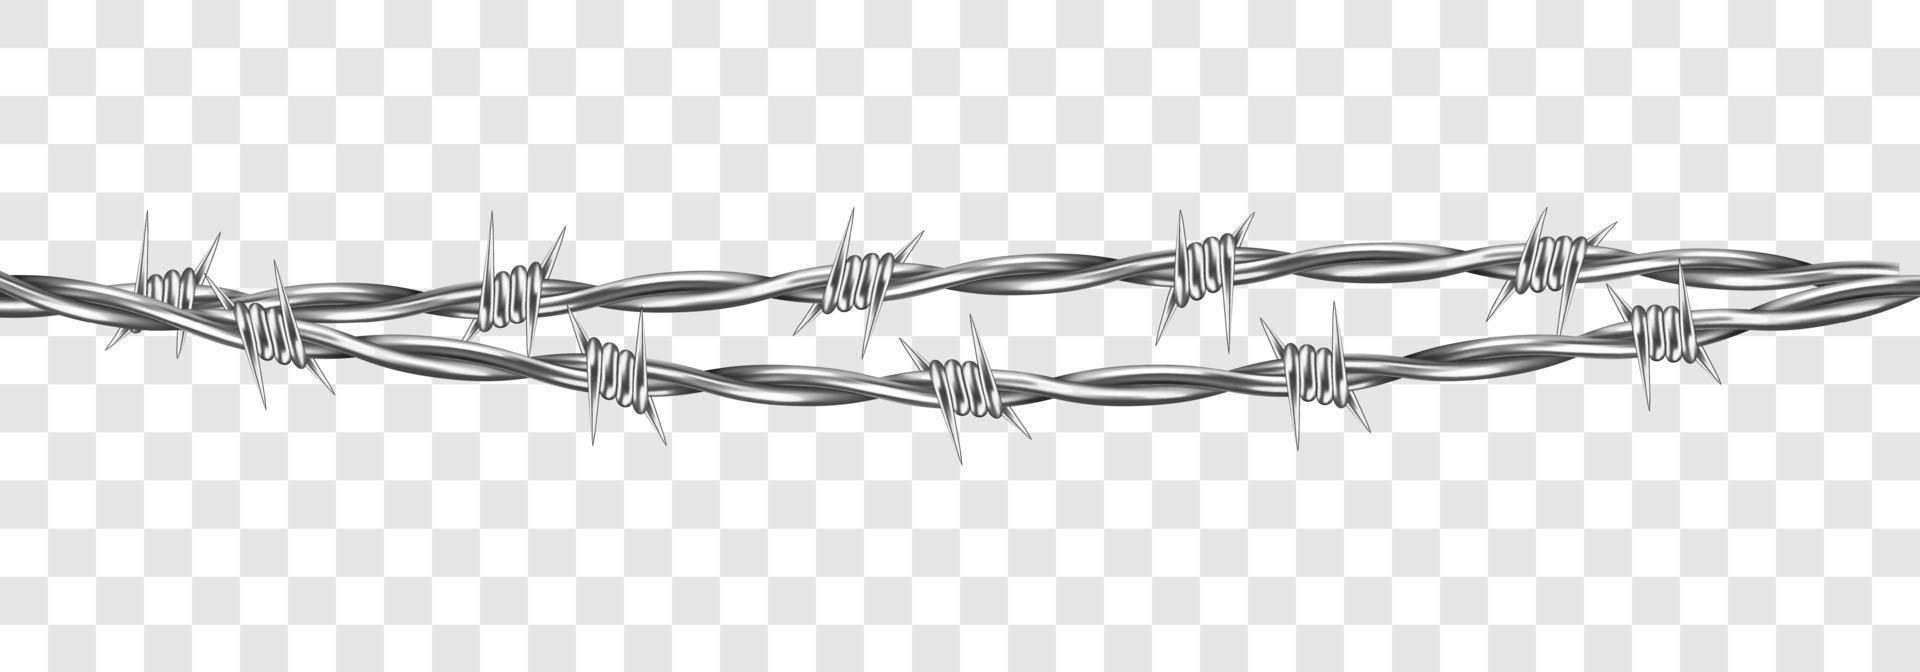 métal acier barbelé câble avec les épines ou pointes vecteur